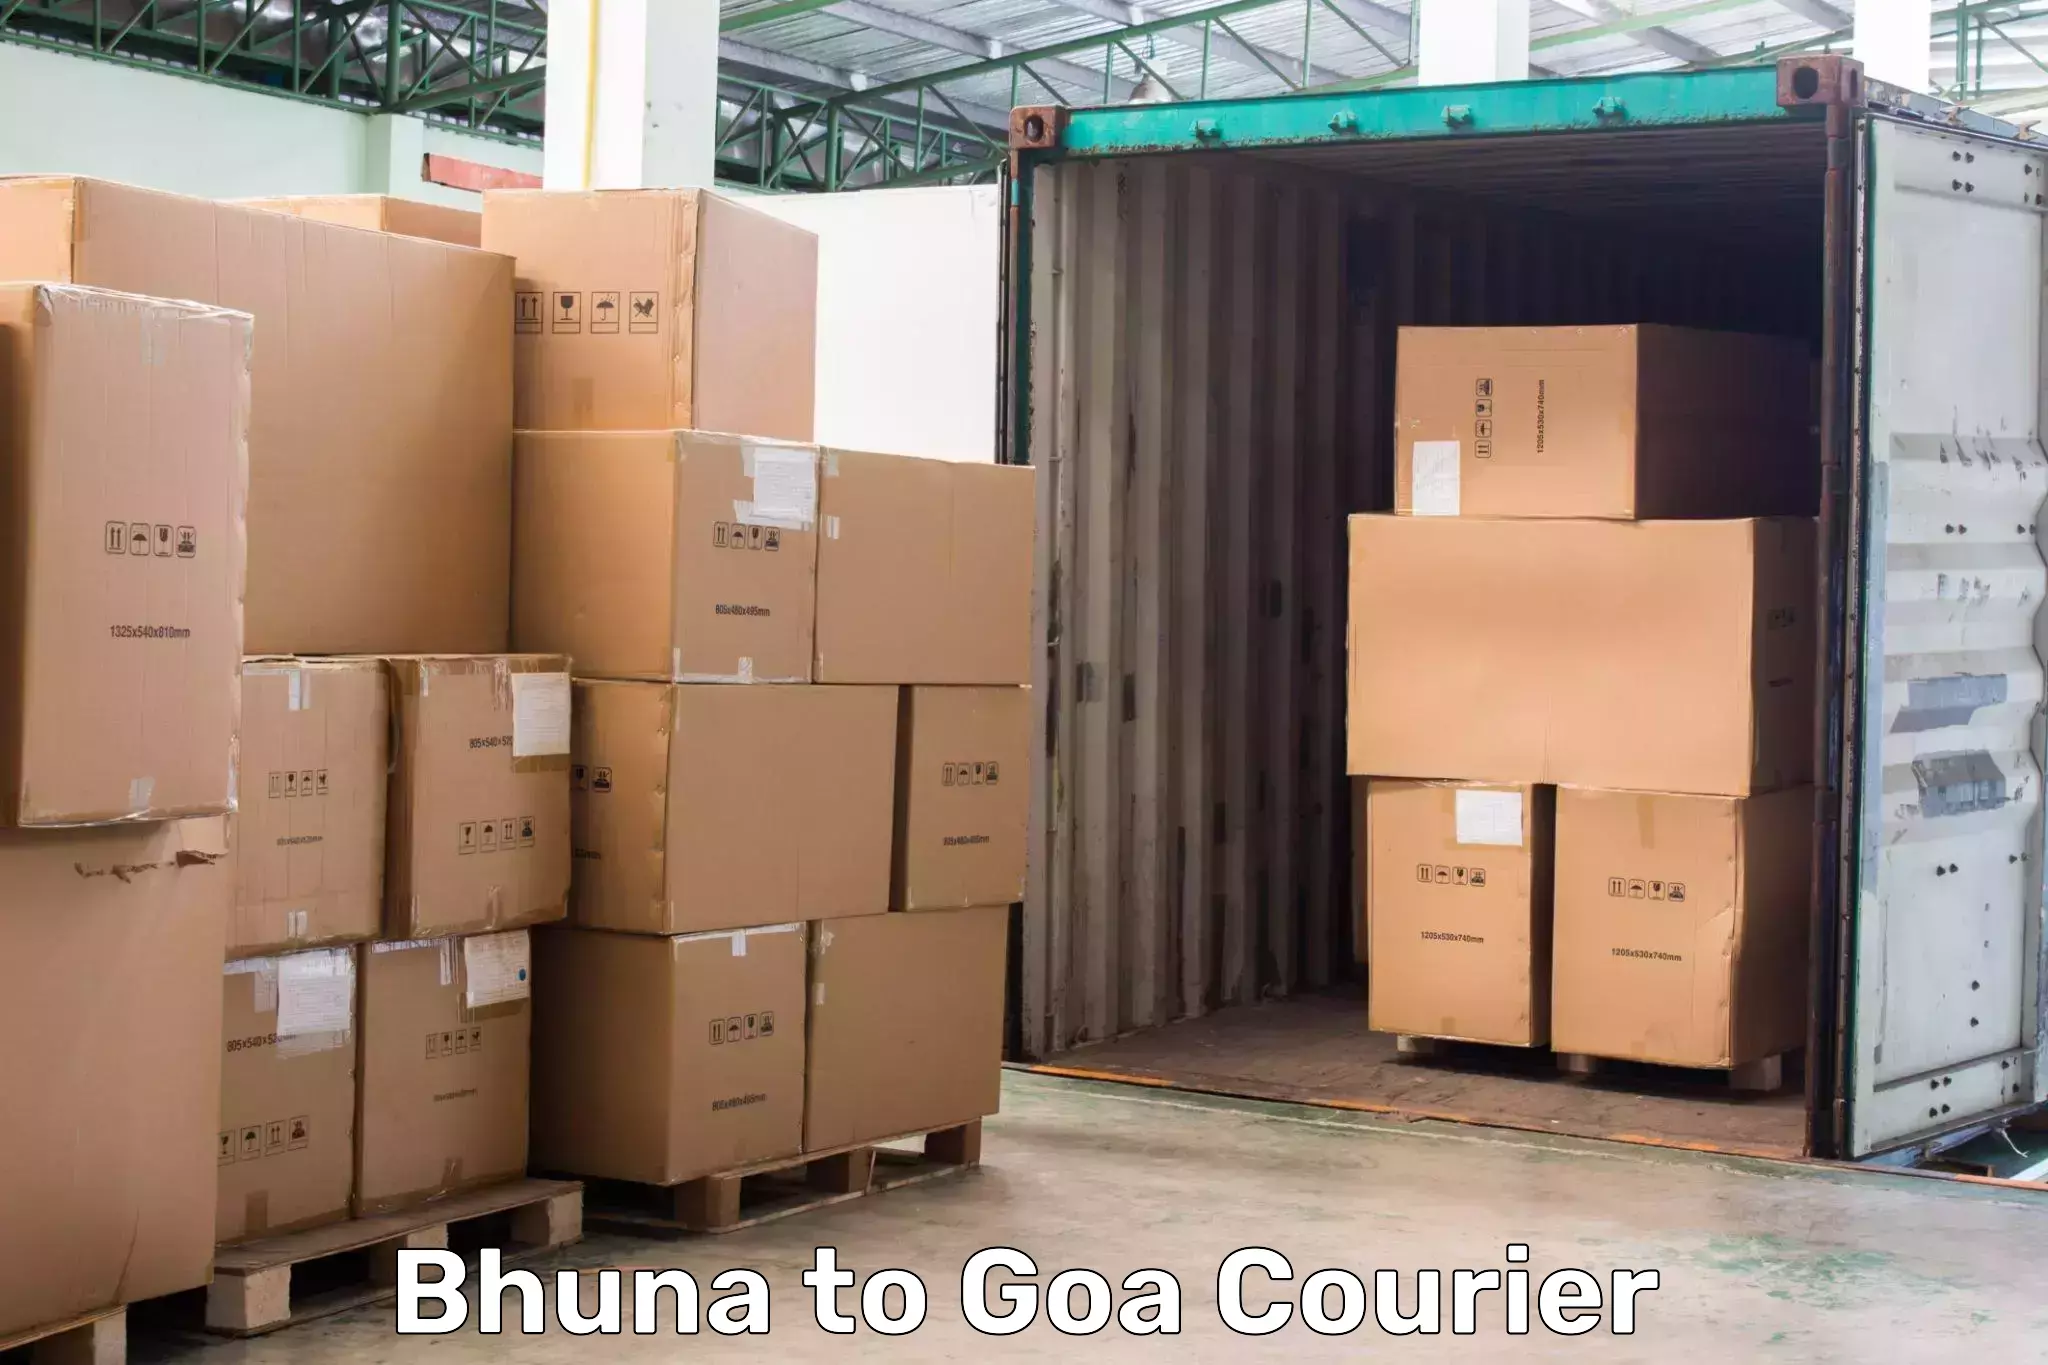 International courier networks Bhuna to Bardez